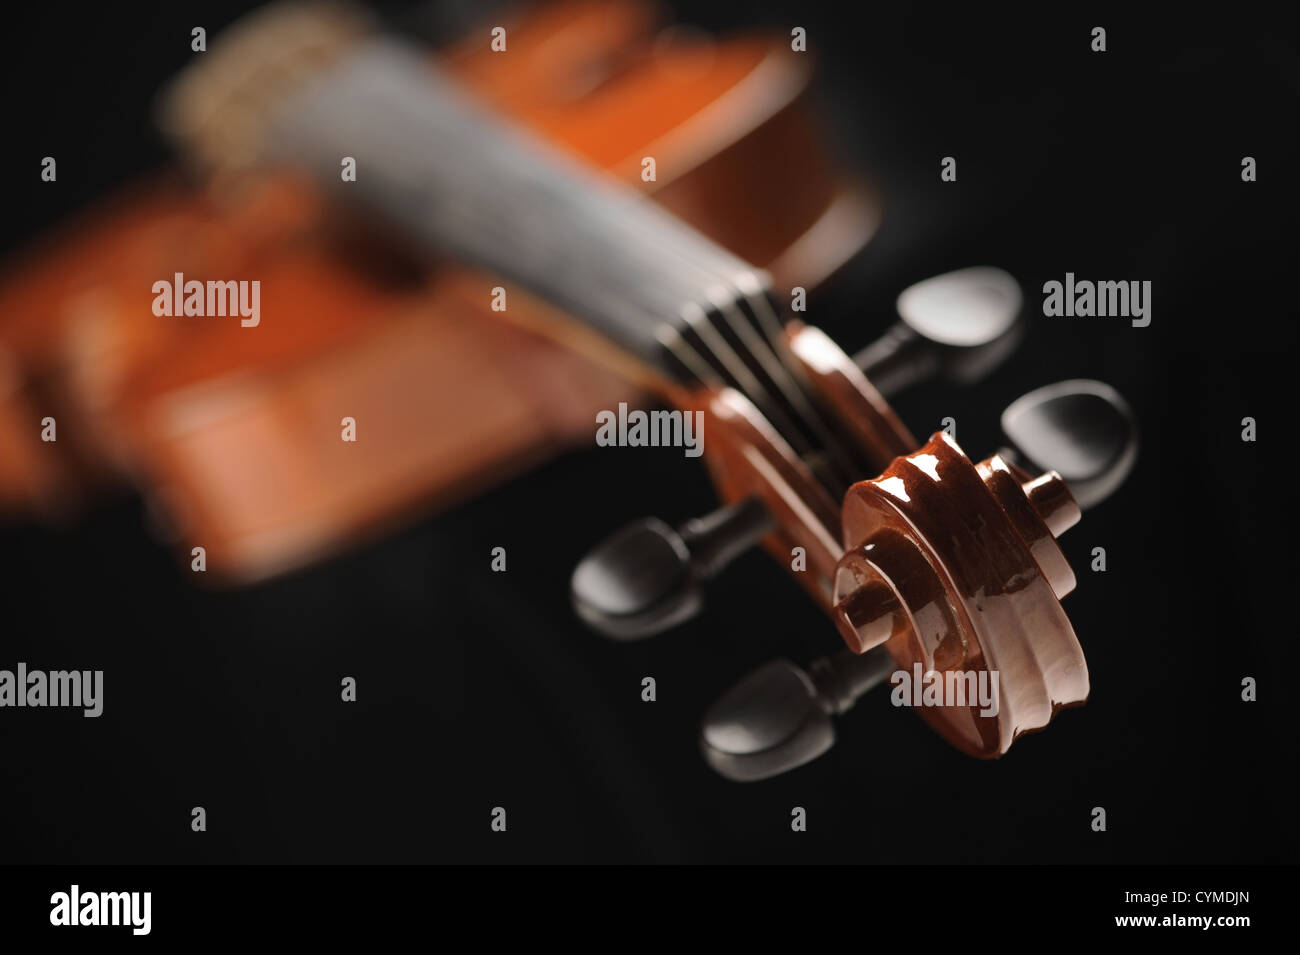 Immagine ravvicinata di un violino, basse profondità di campo Foto Stock